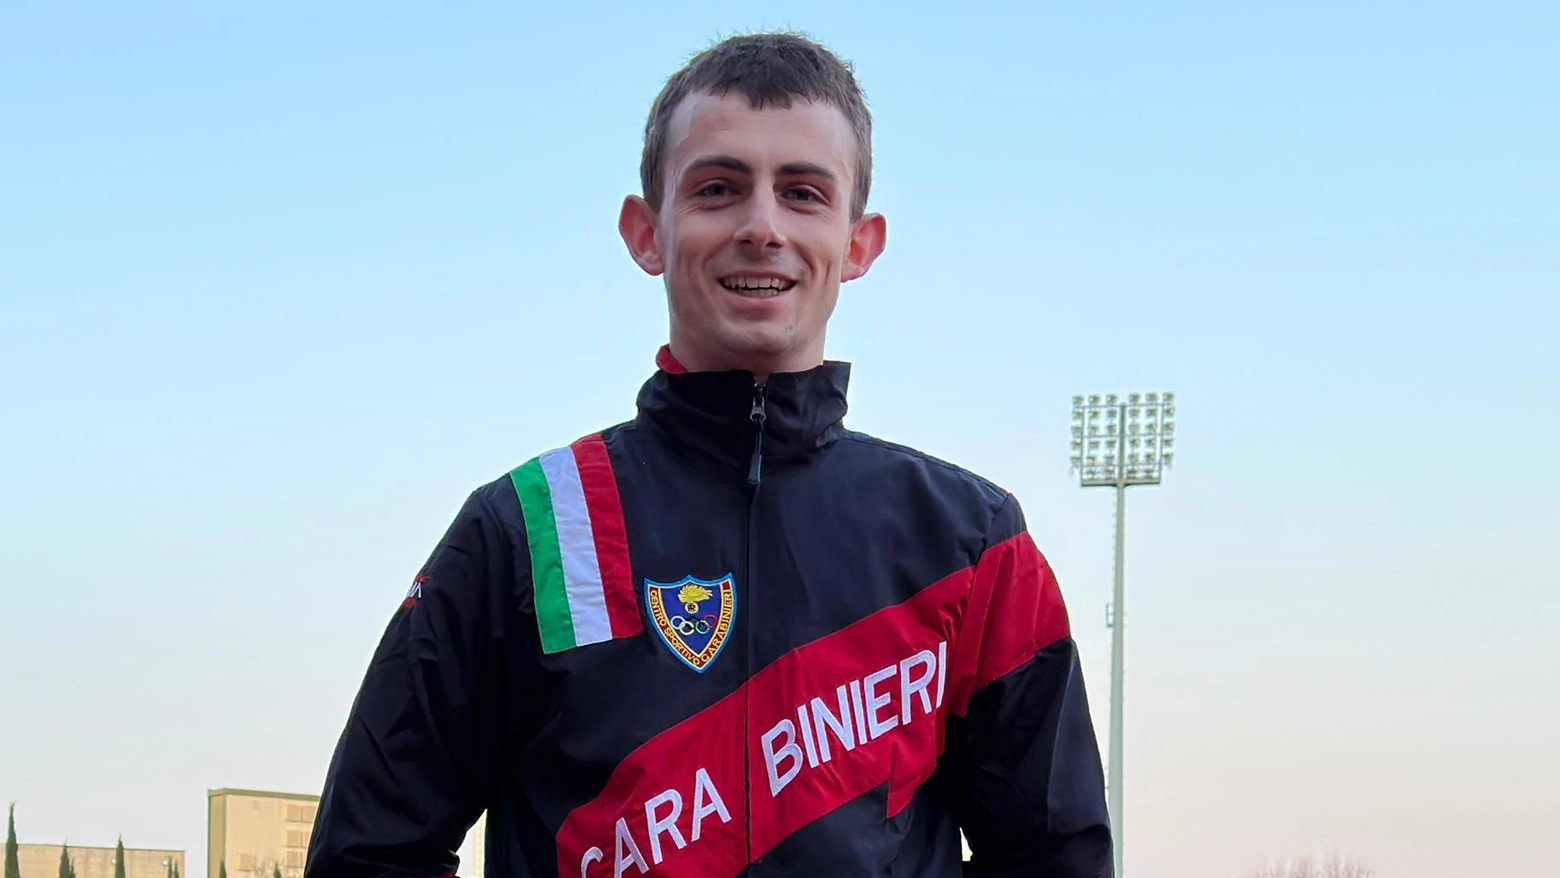 L’atleta fiorentino dei Carabinieri (cresciuto nella Firenze Marathon) ora punta alla Coppa del Mondo e al minimo olimpico